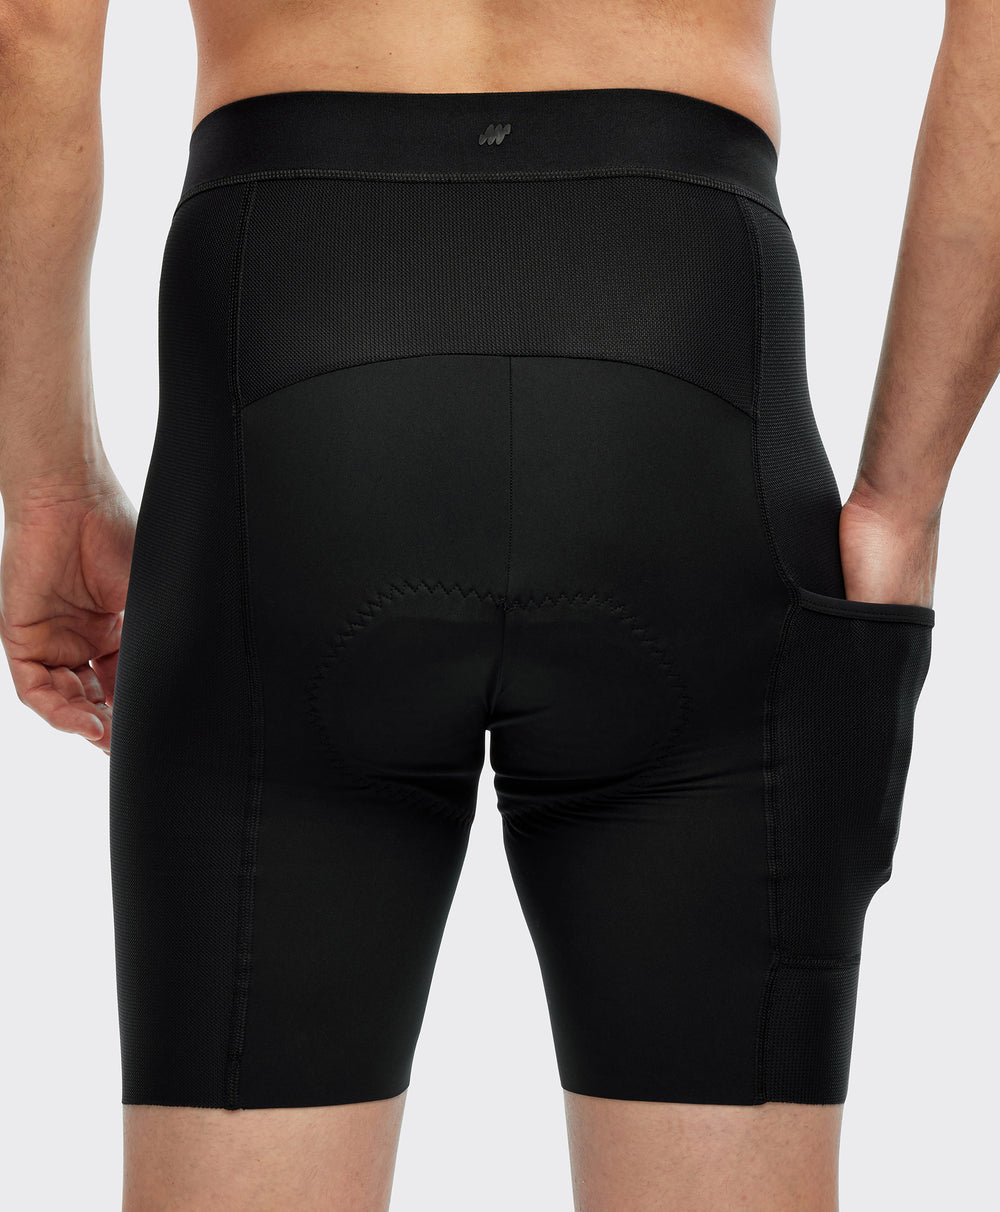 Men's Simpli Under Shorts